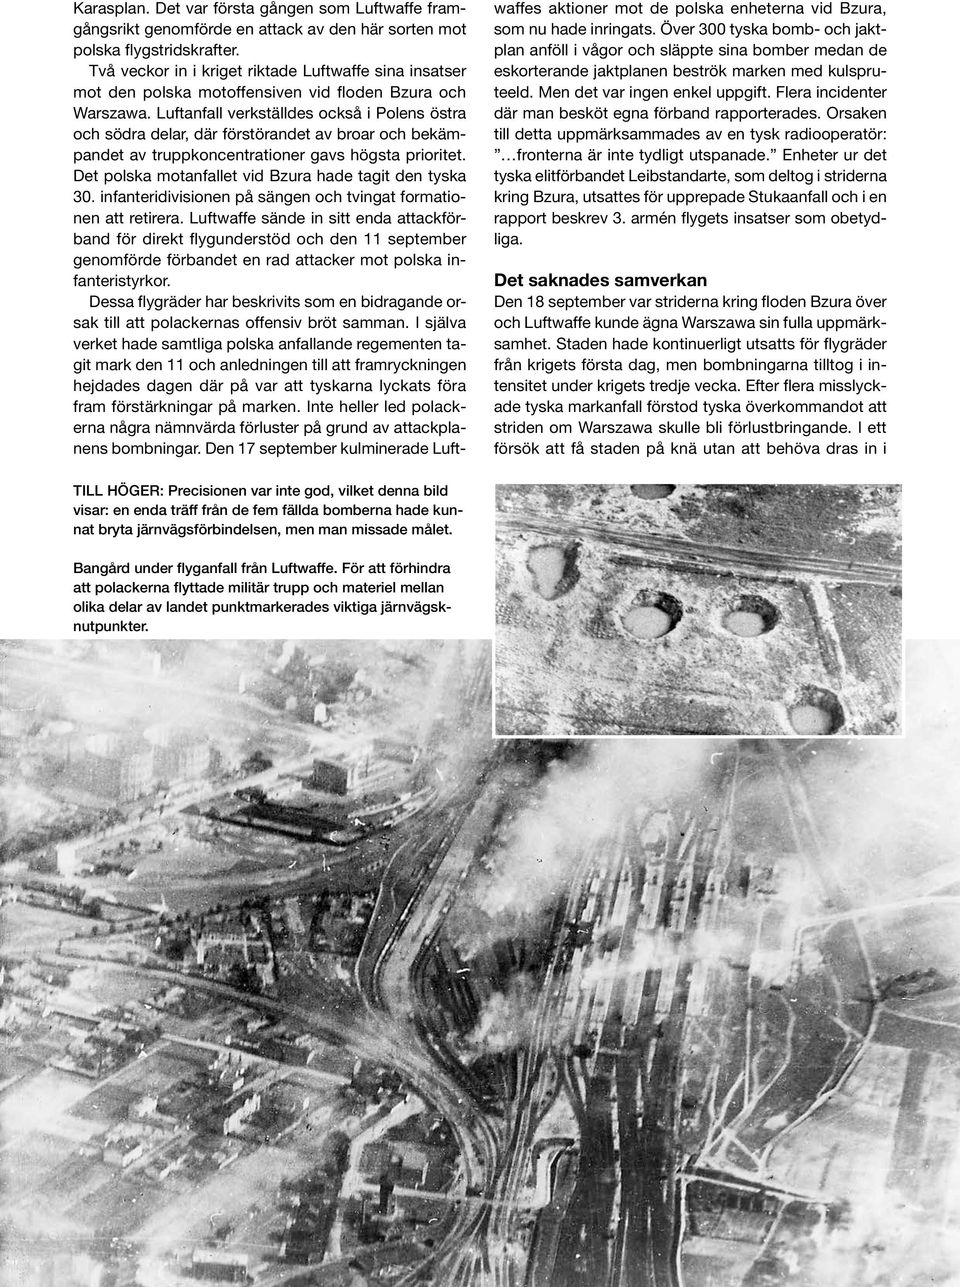 Luftanfall verkställdes också i Polens östra och södra delar, där förstörandet av broar och bekämpandet av truppkoncentrationer gavs högsta prioritet.